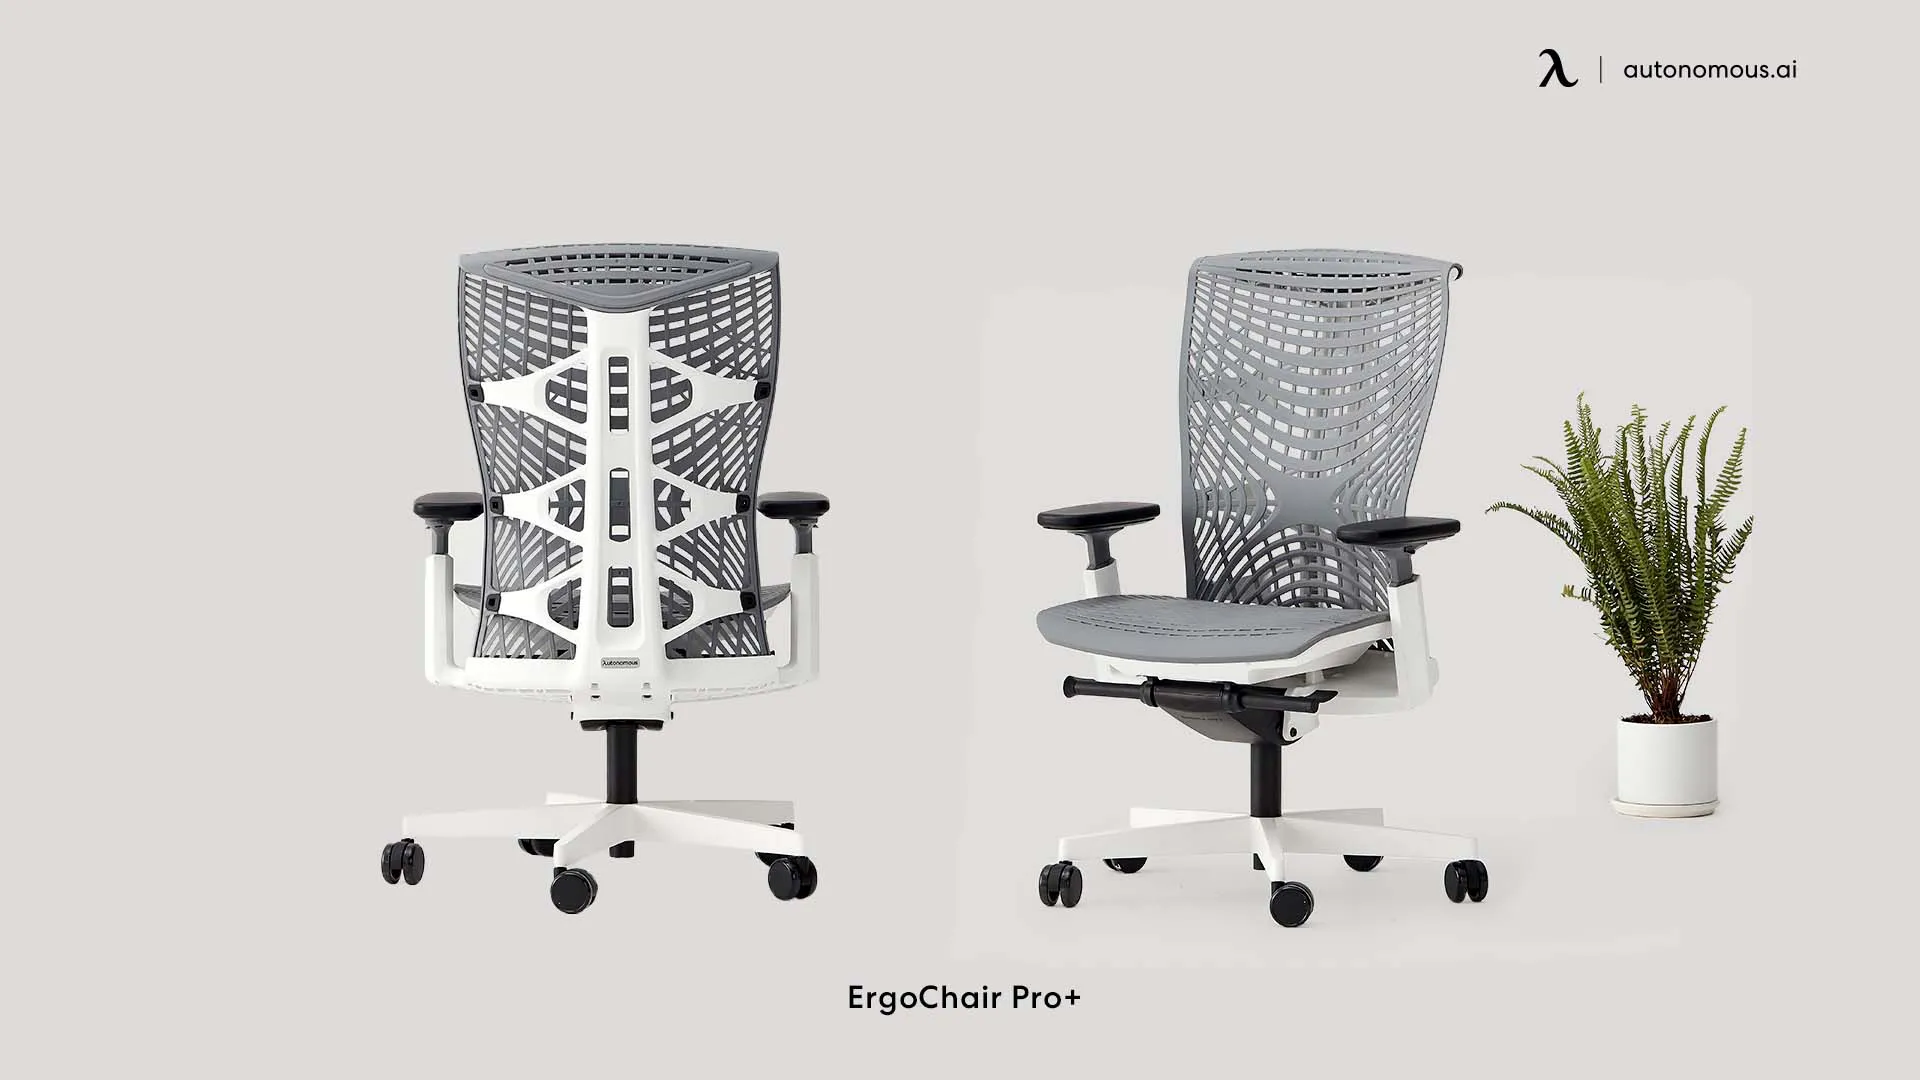 ErgoChair Pro+ by Autonomous comfortable office chair